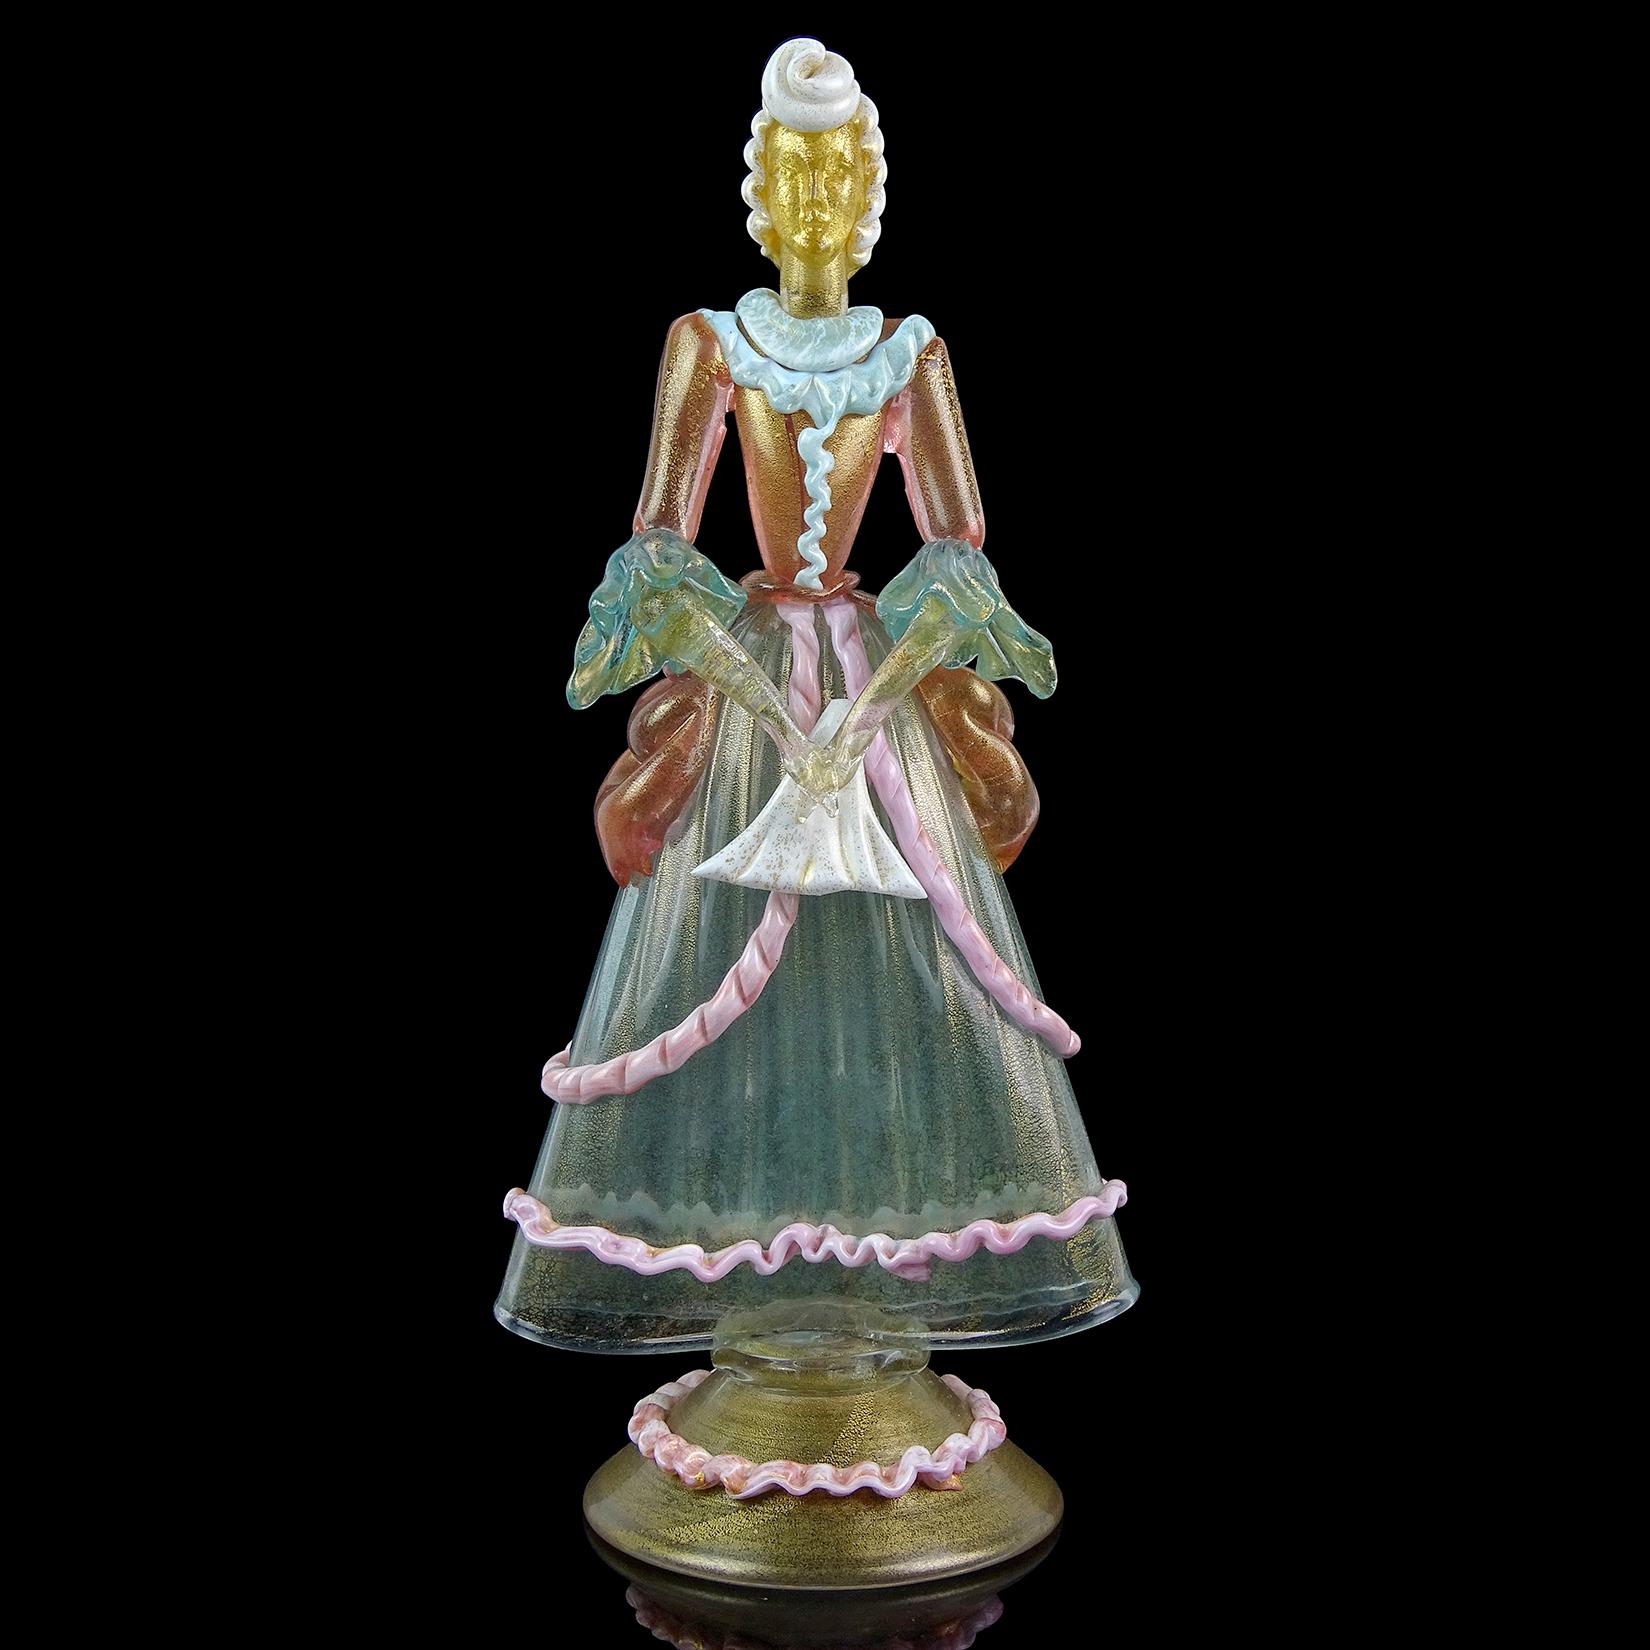 Schöne große, Vintage Murano mundgeblasen transparent aqua, rosa, himmelblau, weiß und Gold Flecken italienische Kunstglas viktorianischen Frau Skulptur. Von oben beginnend hat sie eine große, gedrehte, weiße Duttfrisur. Großer himmelblauer